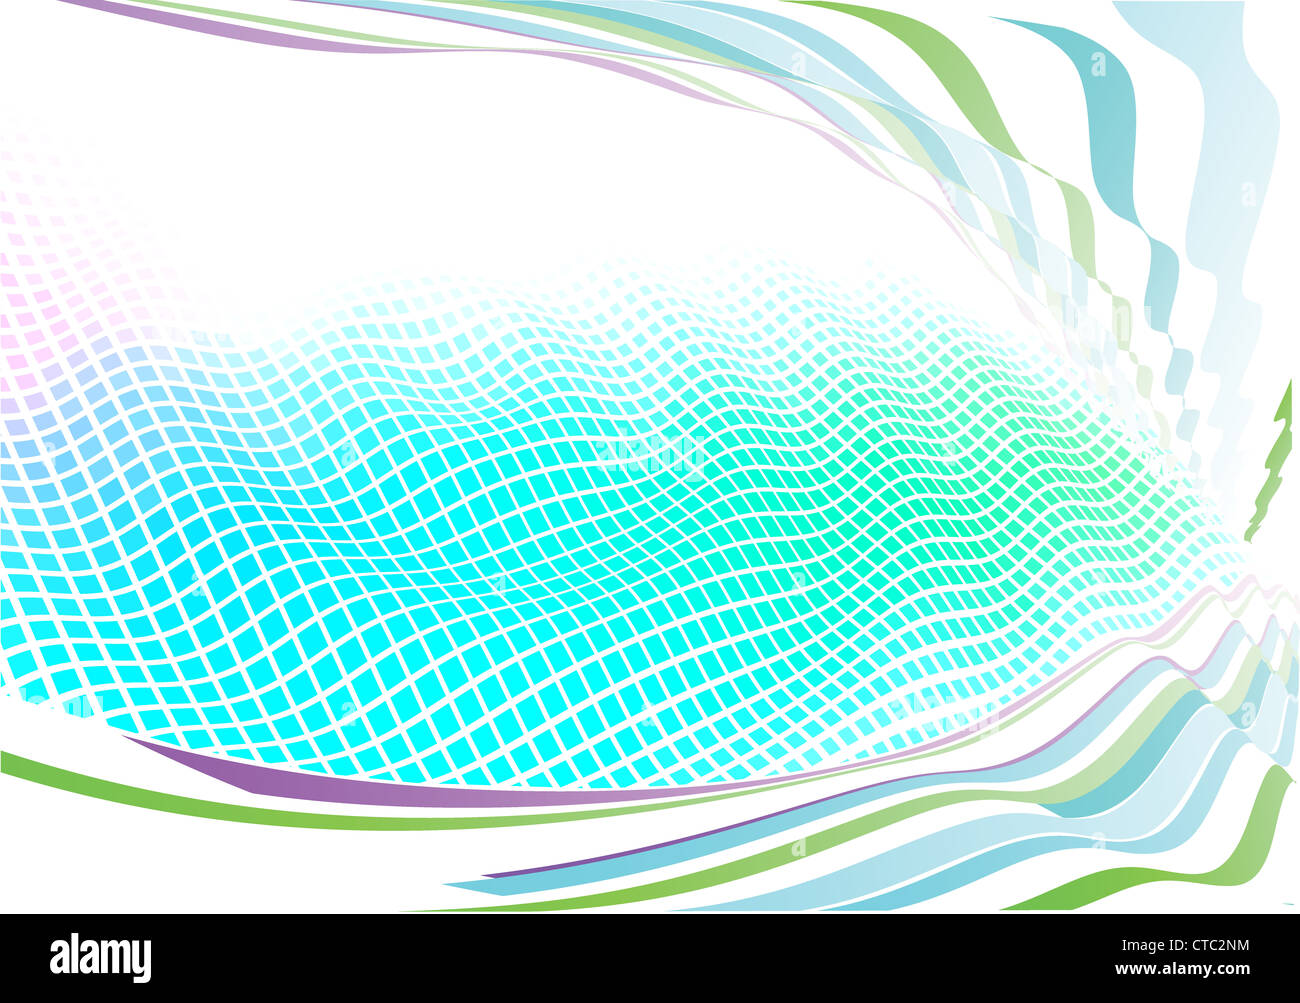 Illustrazione Vettoriale funky sfondo astratto realizzate piazze geometriche linee curve eccezionali sfondi su più livelli in altre immagini Foto Stock